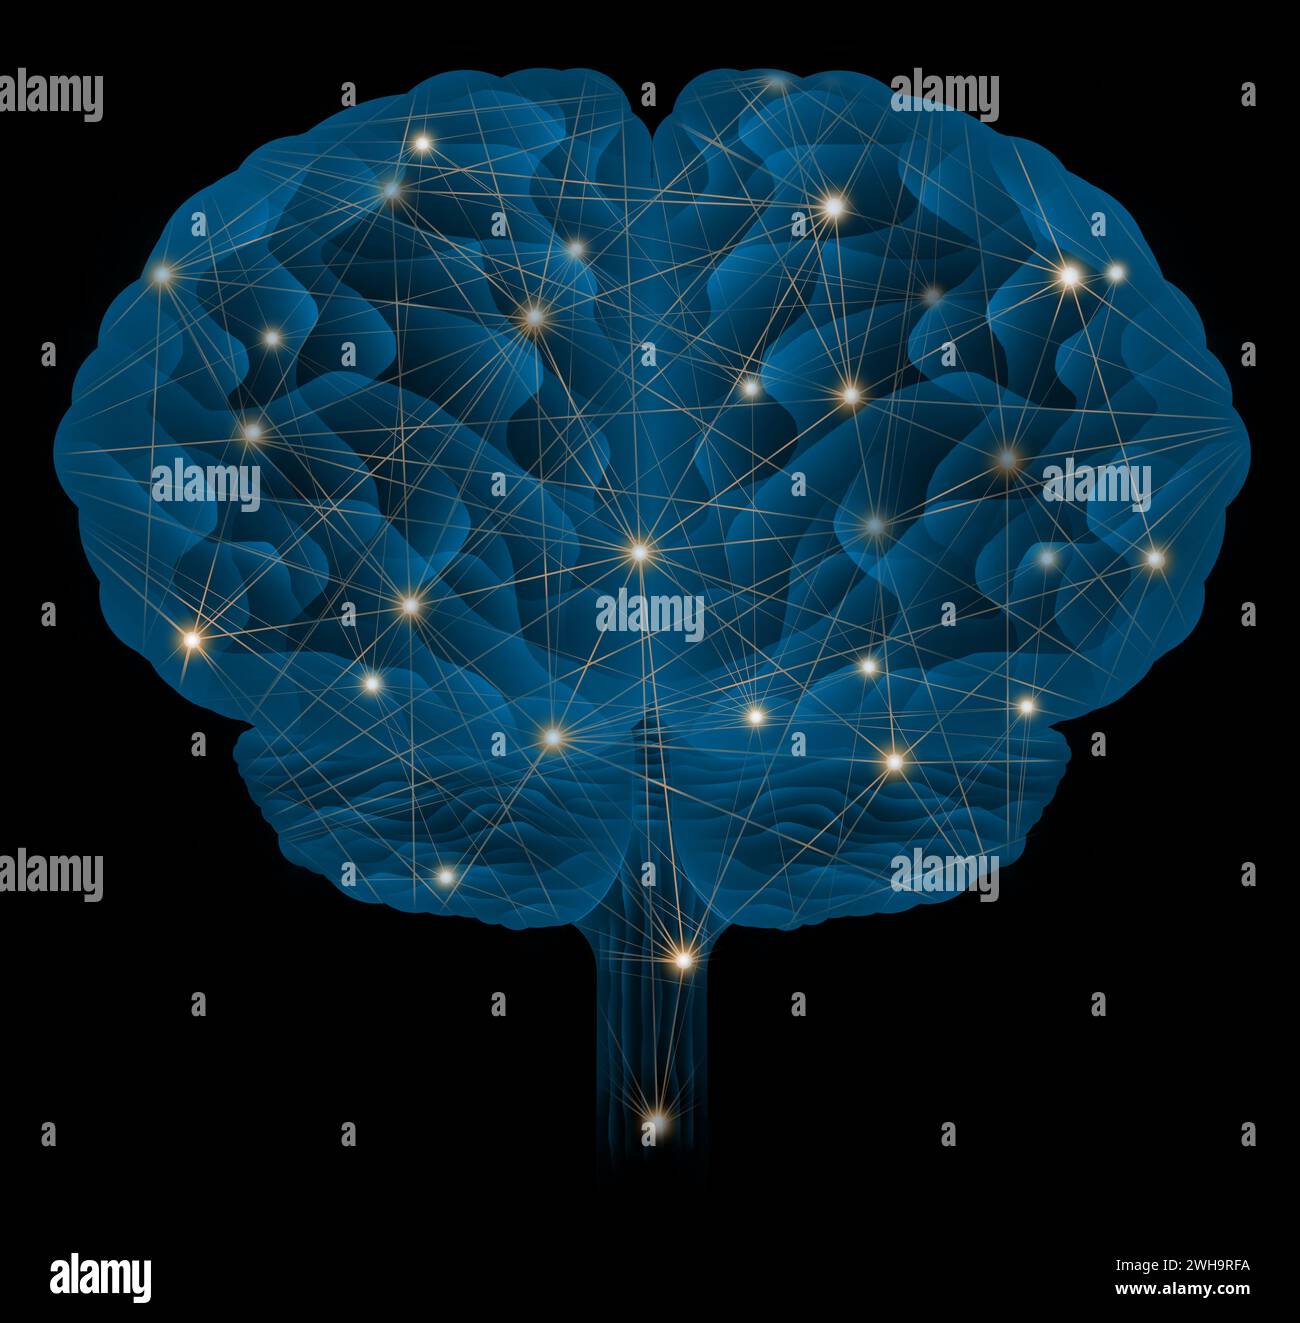 Hintergehirn menschliches Blau mit Netzwerk-Lichtpunkt-Illustration, neuronales Netzkonzept, künstliches Intelligenzkonzept Stockfoto